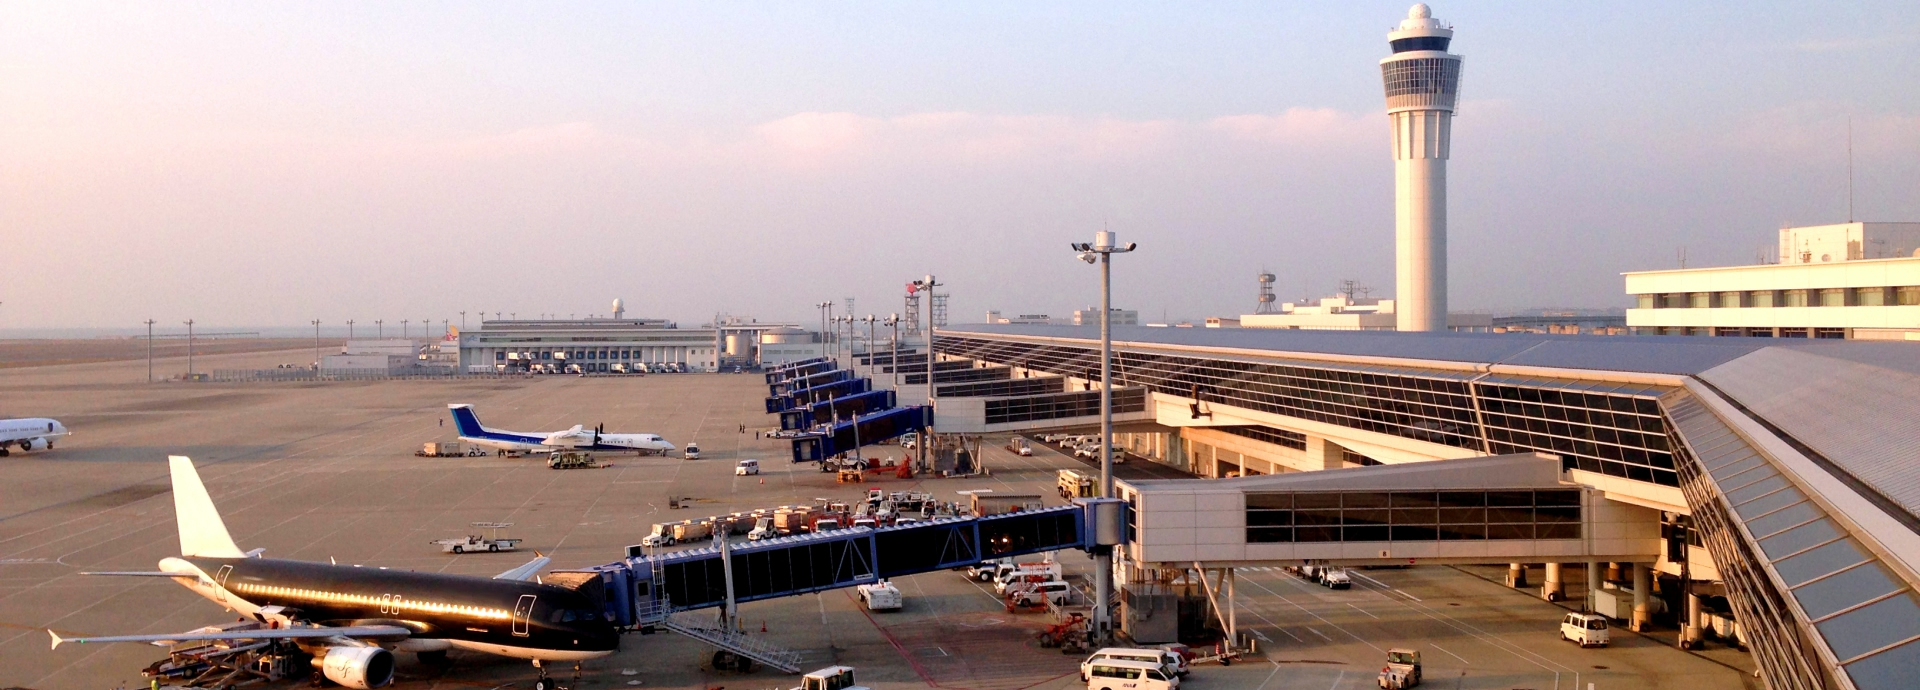 중부 국제공항 센토레아(NGO)Chubu Centrair International Airport